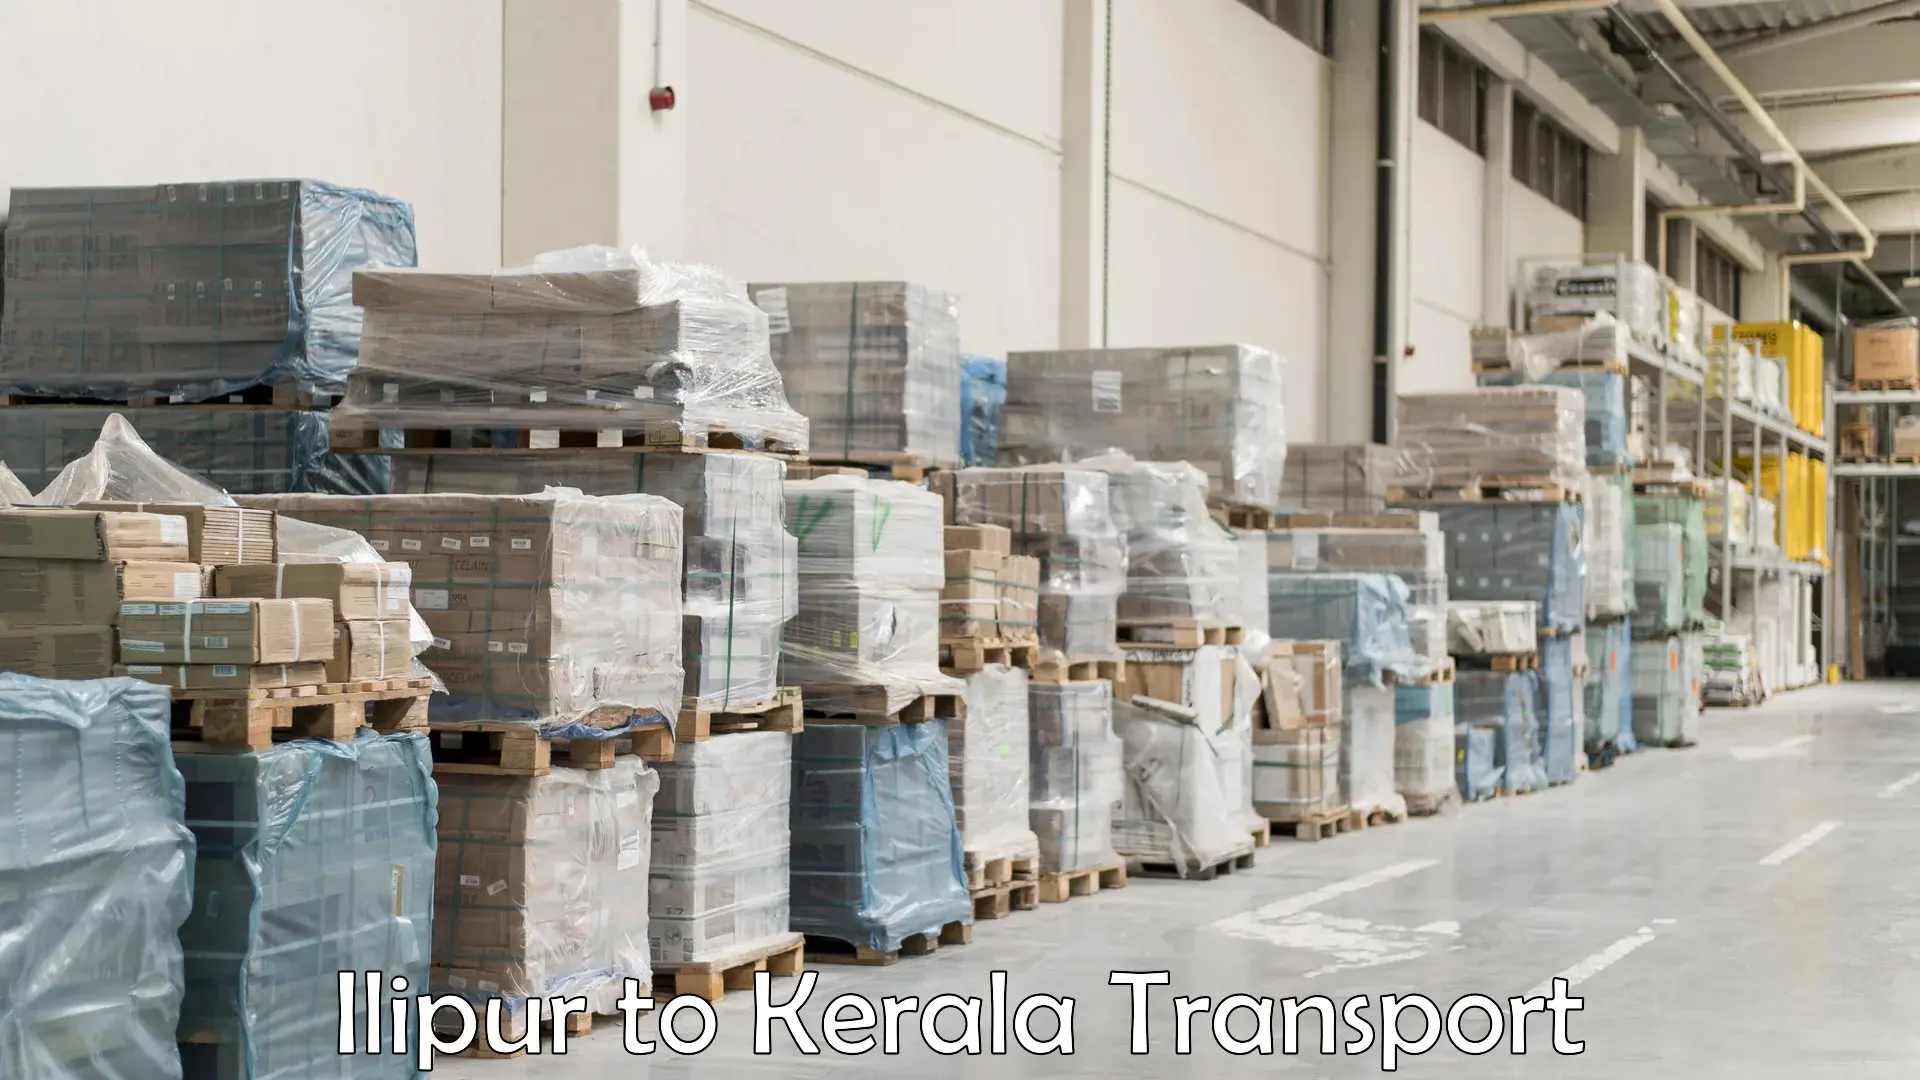 Nearby transport service in Ilipur to Kerala